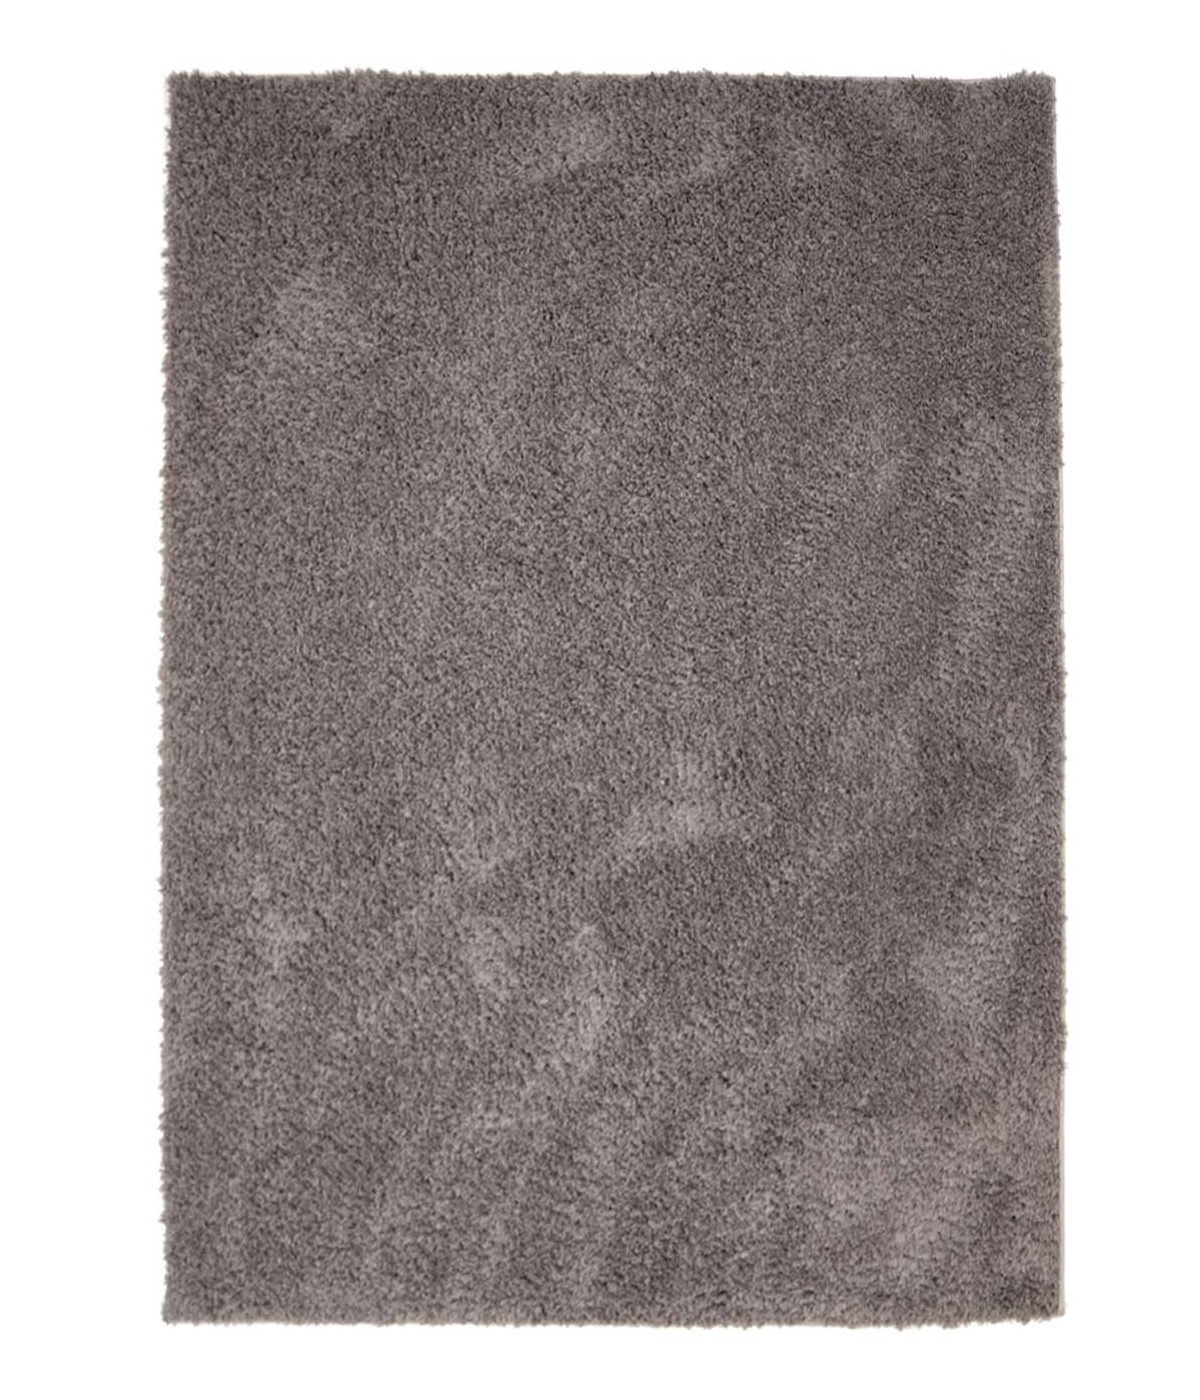 Soft Shine matta brun rya ryamatta rund lång lugg kort 60x120 cm 80x 150 cm 140x200 cm 160x230 cm 200x300 cm